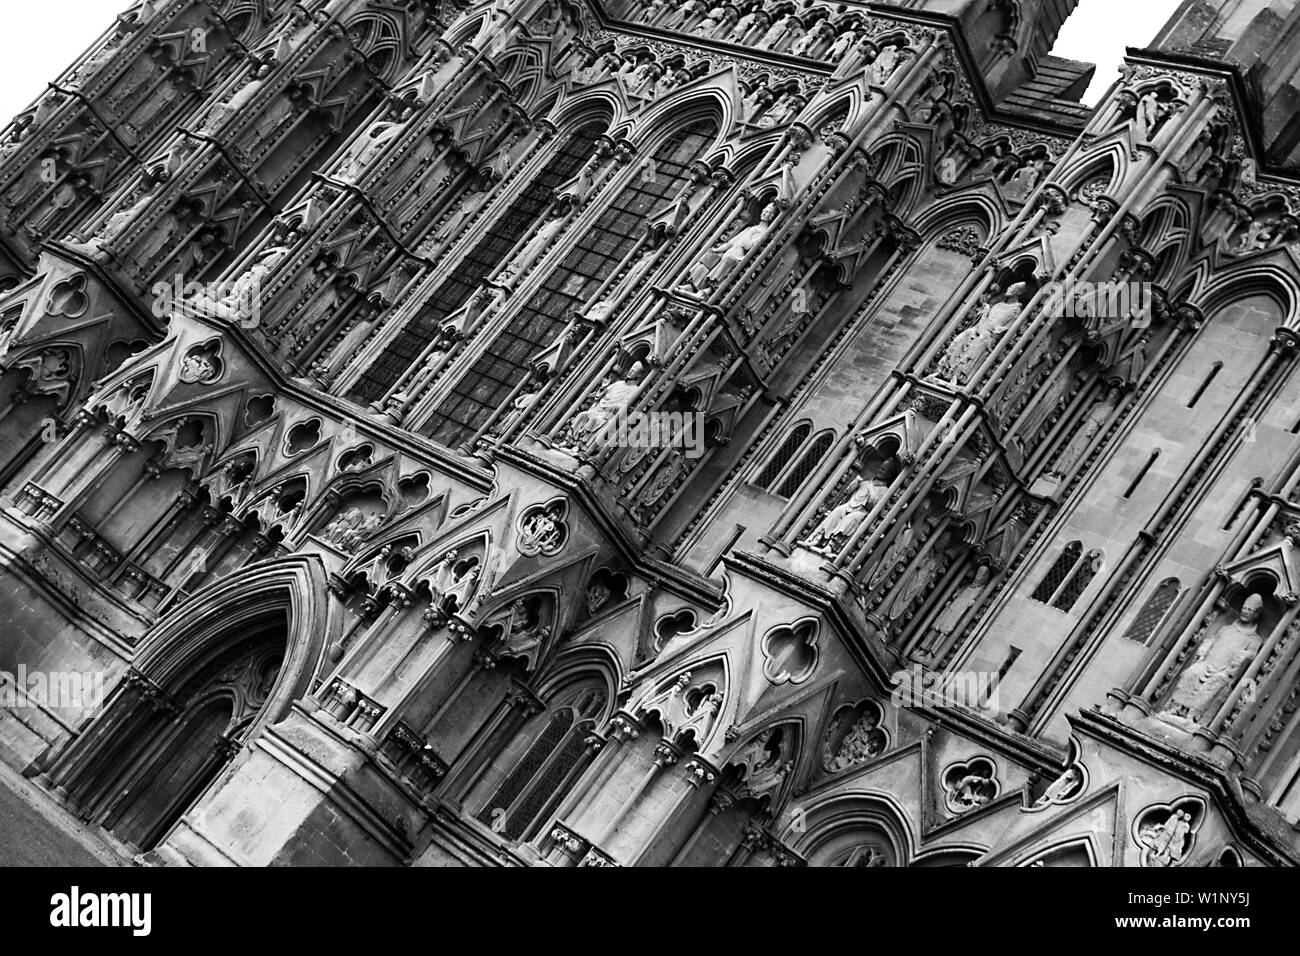 Wells Cathedral Fassade, meist frühenglische gotische Architektur aus dem späten 12. Bis frühen 13. Jahrhundert mit 300 Skulpturen, Somerset. Stockfoto